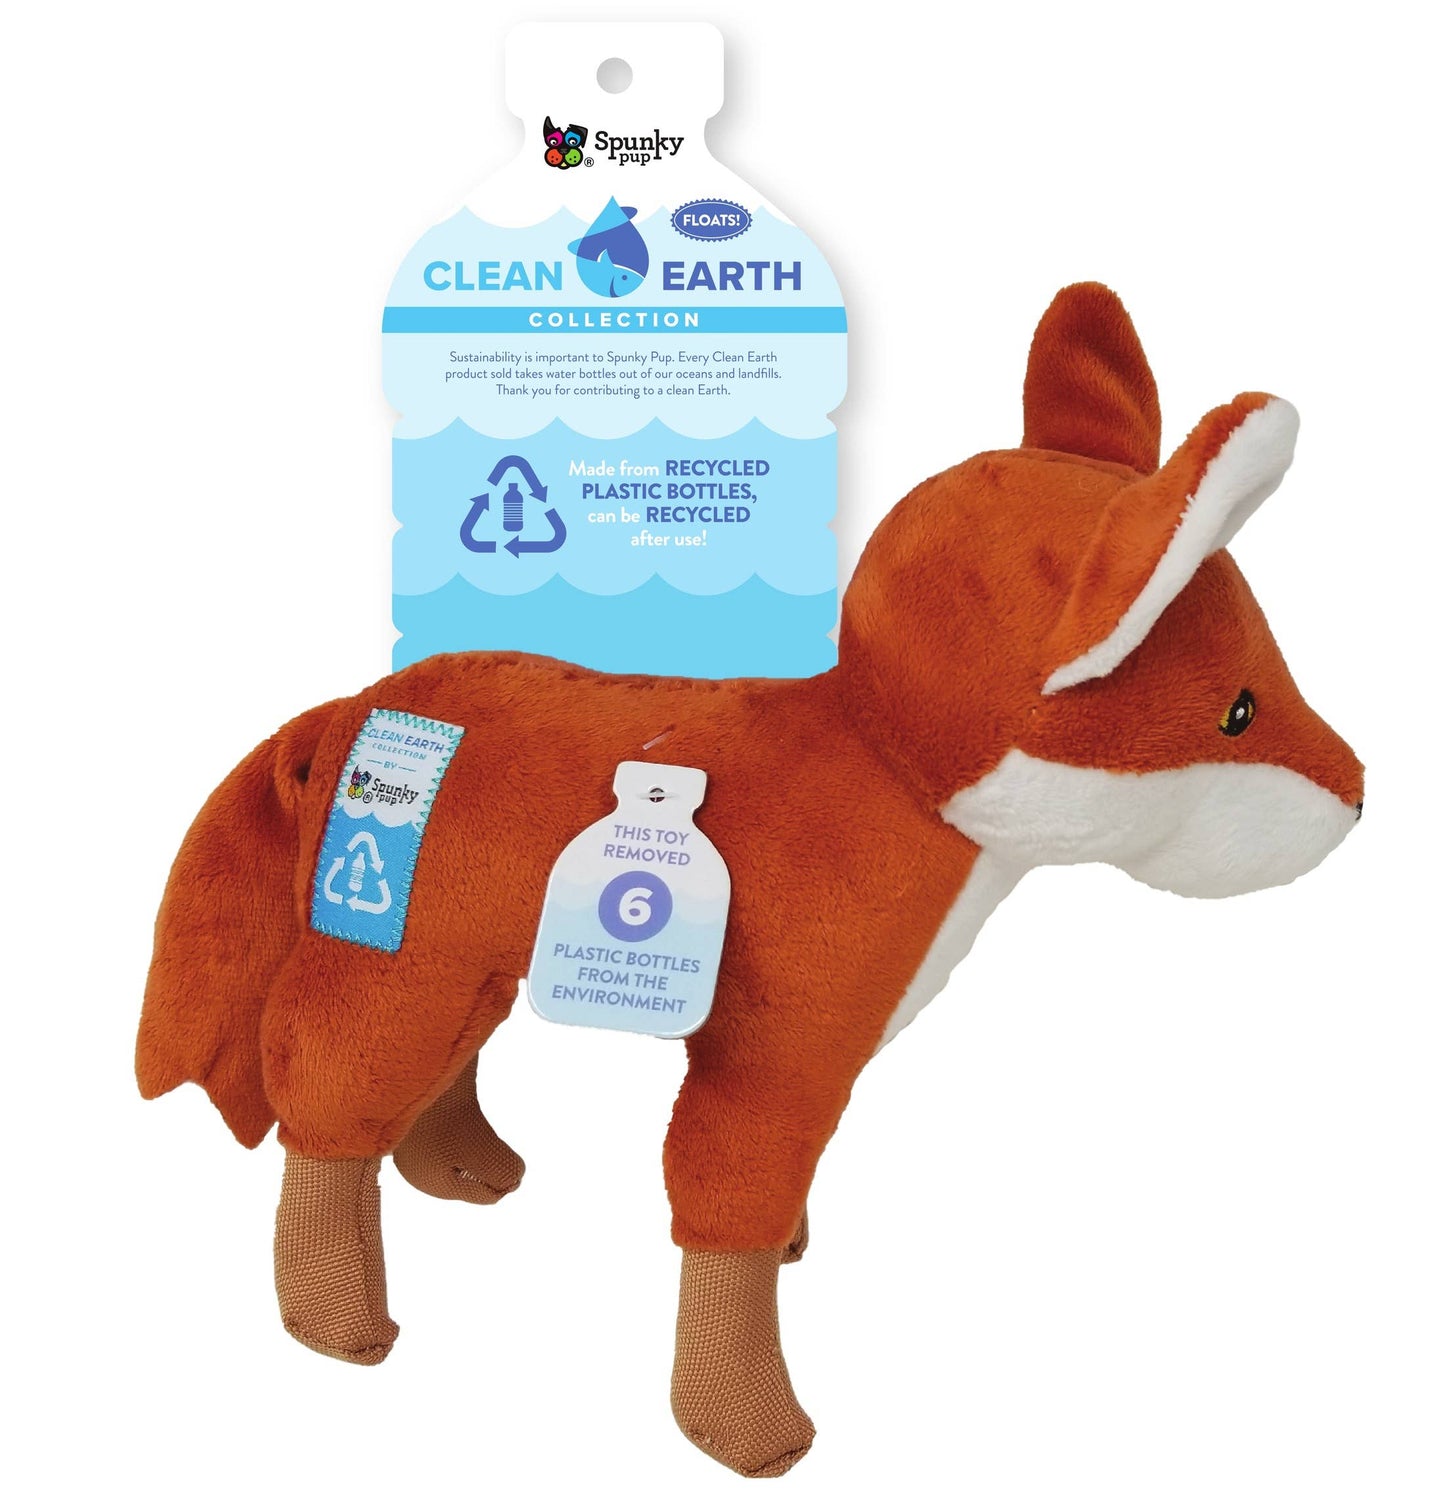 Clean Earth Fox plush dog toy